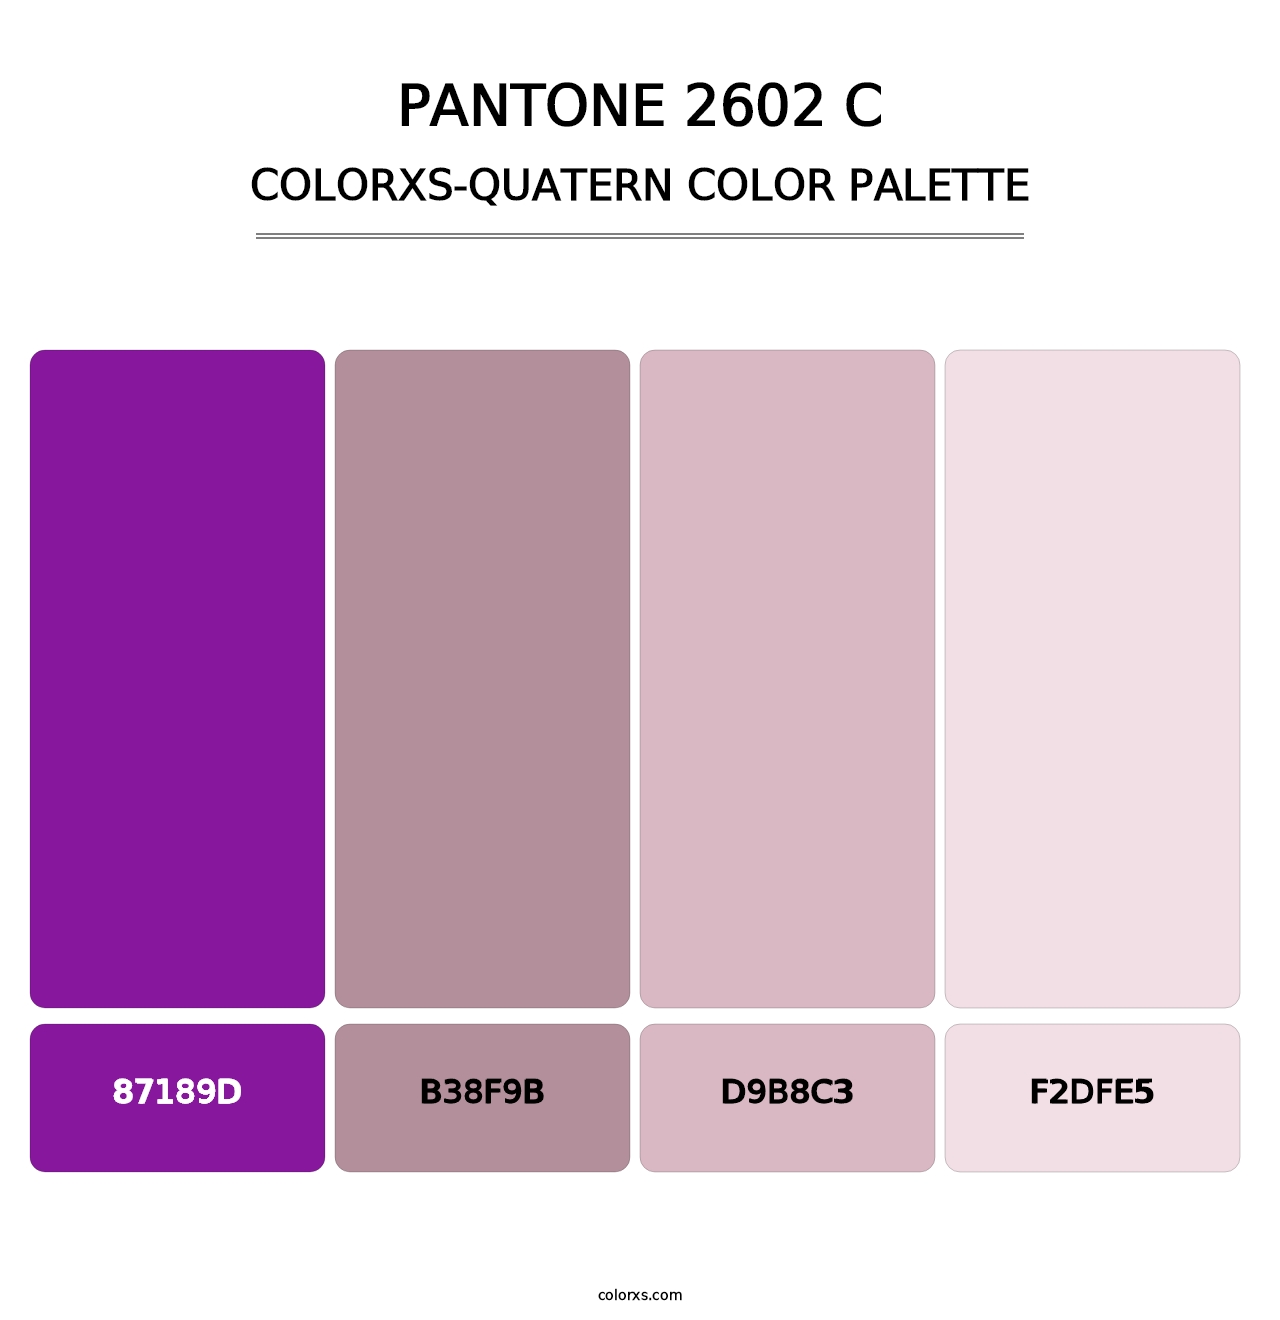 PANTONE 2602 C - Colorxs Quatern Palette